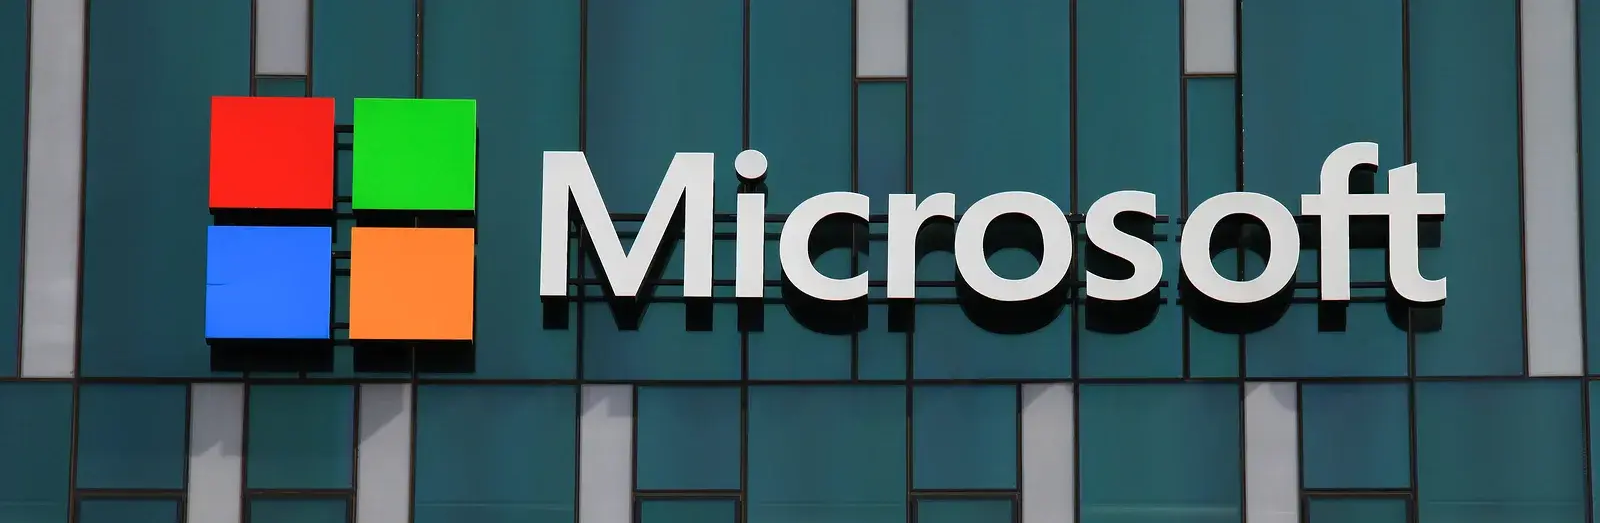 Чего ждать от Microsoft - только сухие факты!